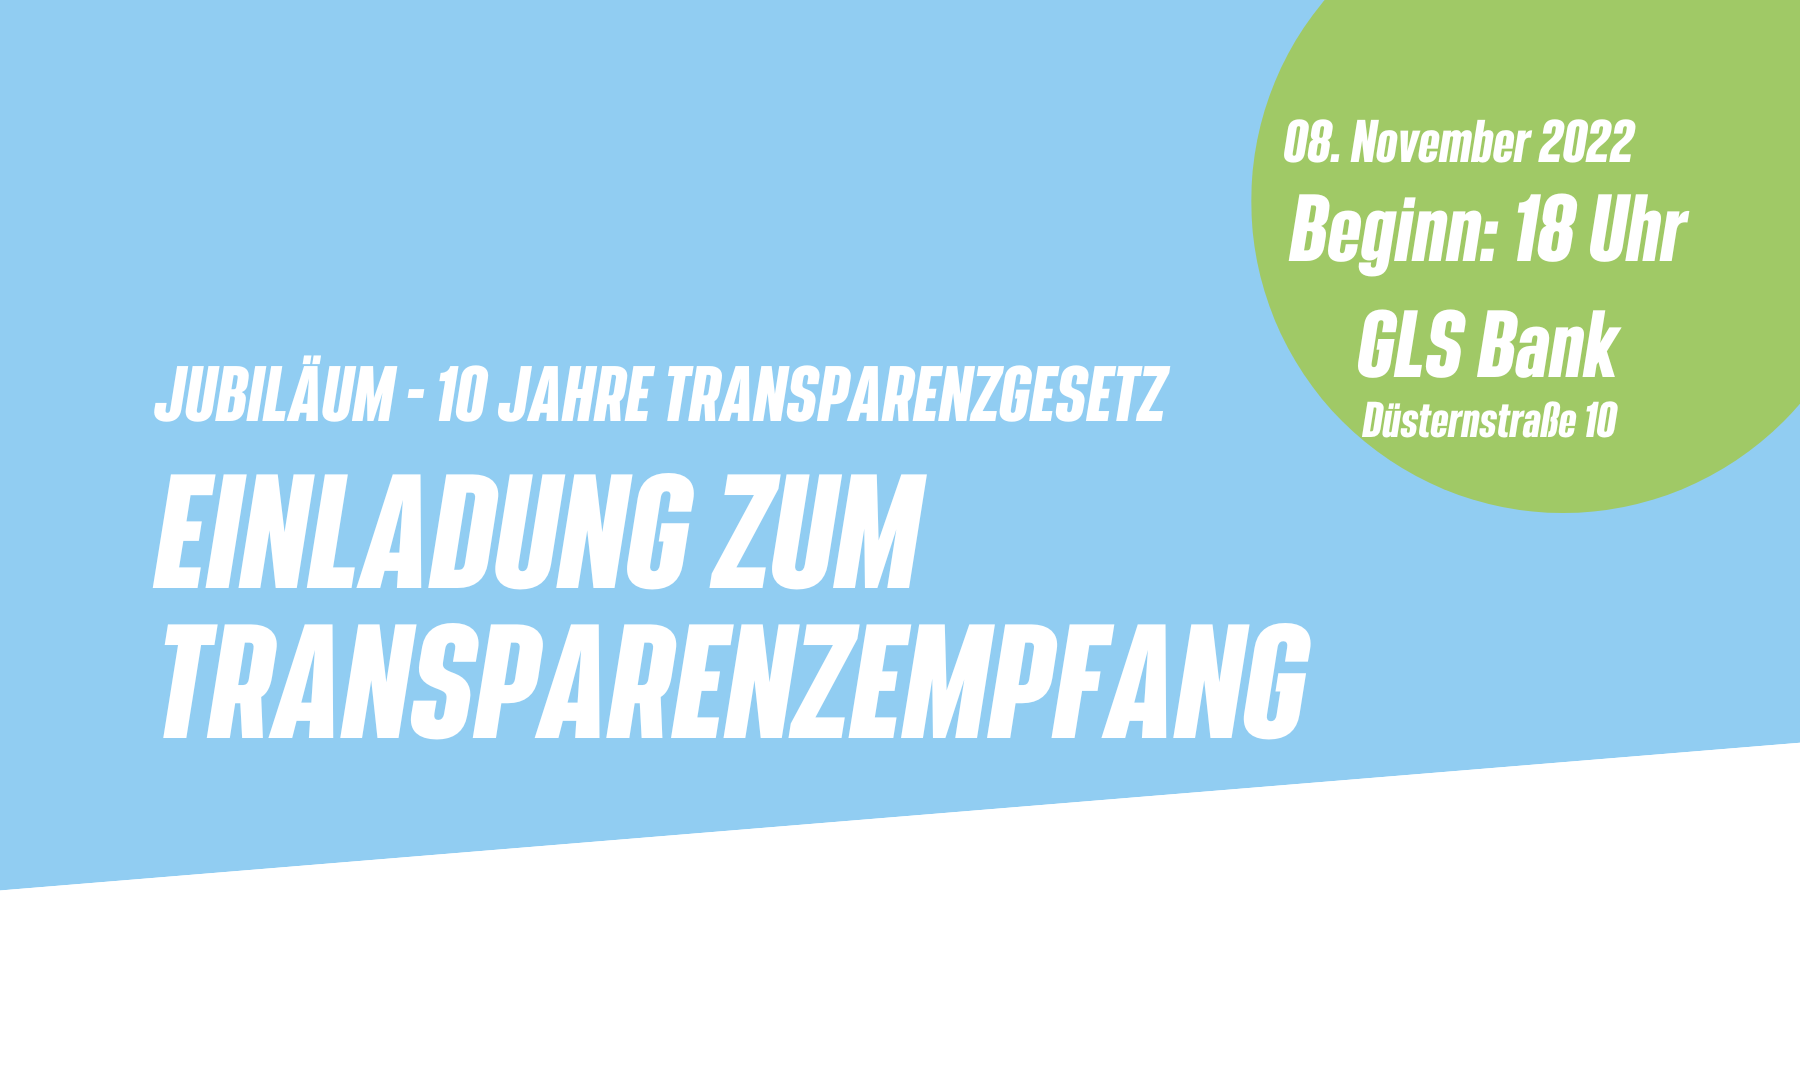 You are currently viewing Transparenzempfang: 10 Jahre Hamburgisches Transparenzgesetz